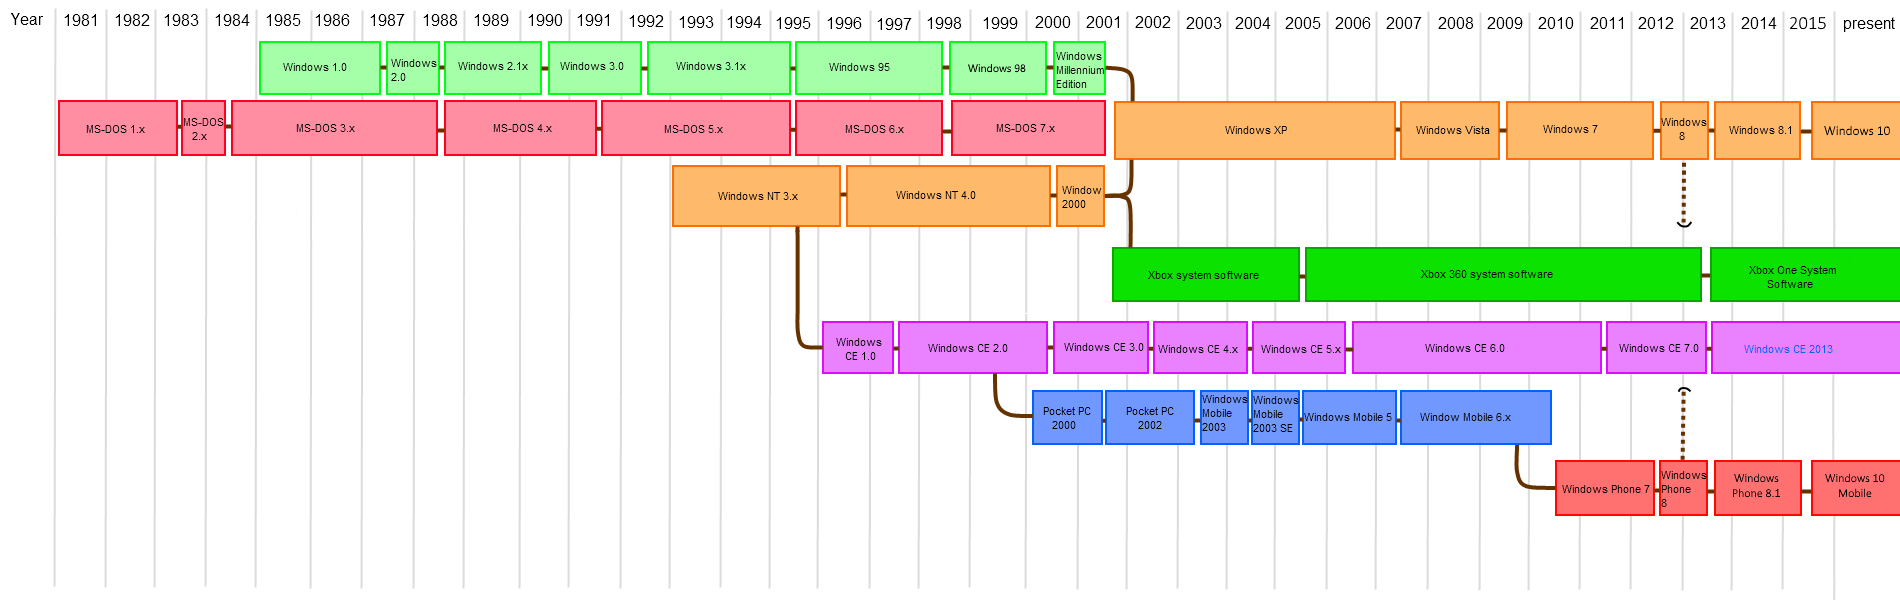 图 2-2 Windows 发行版历史时间线